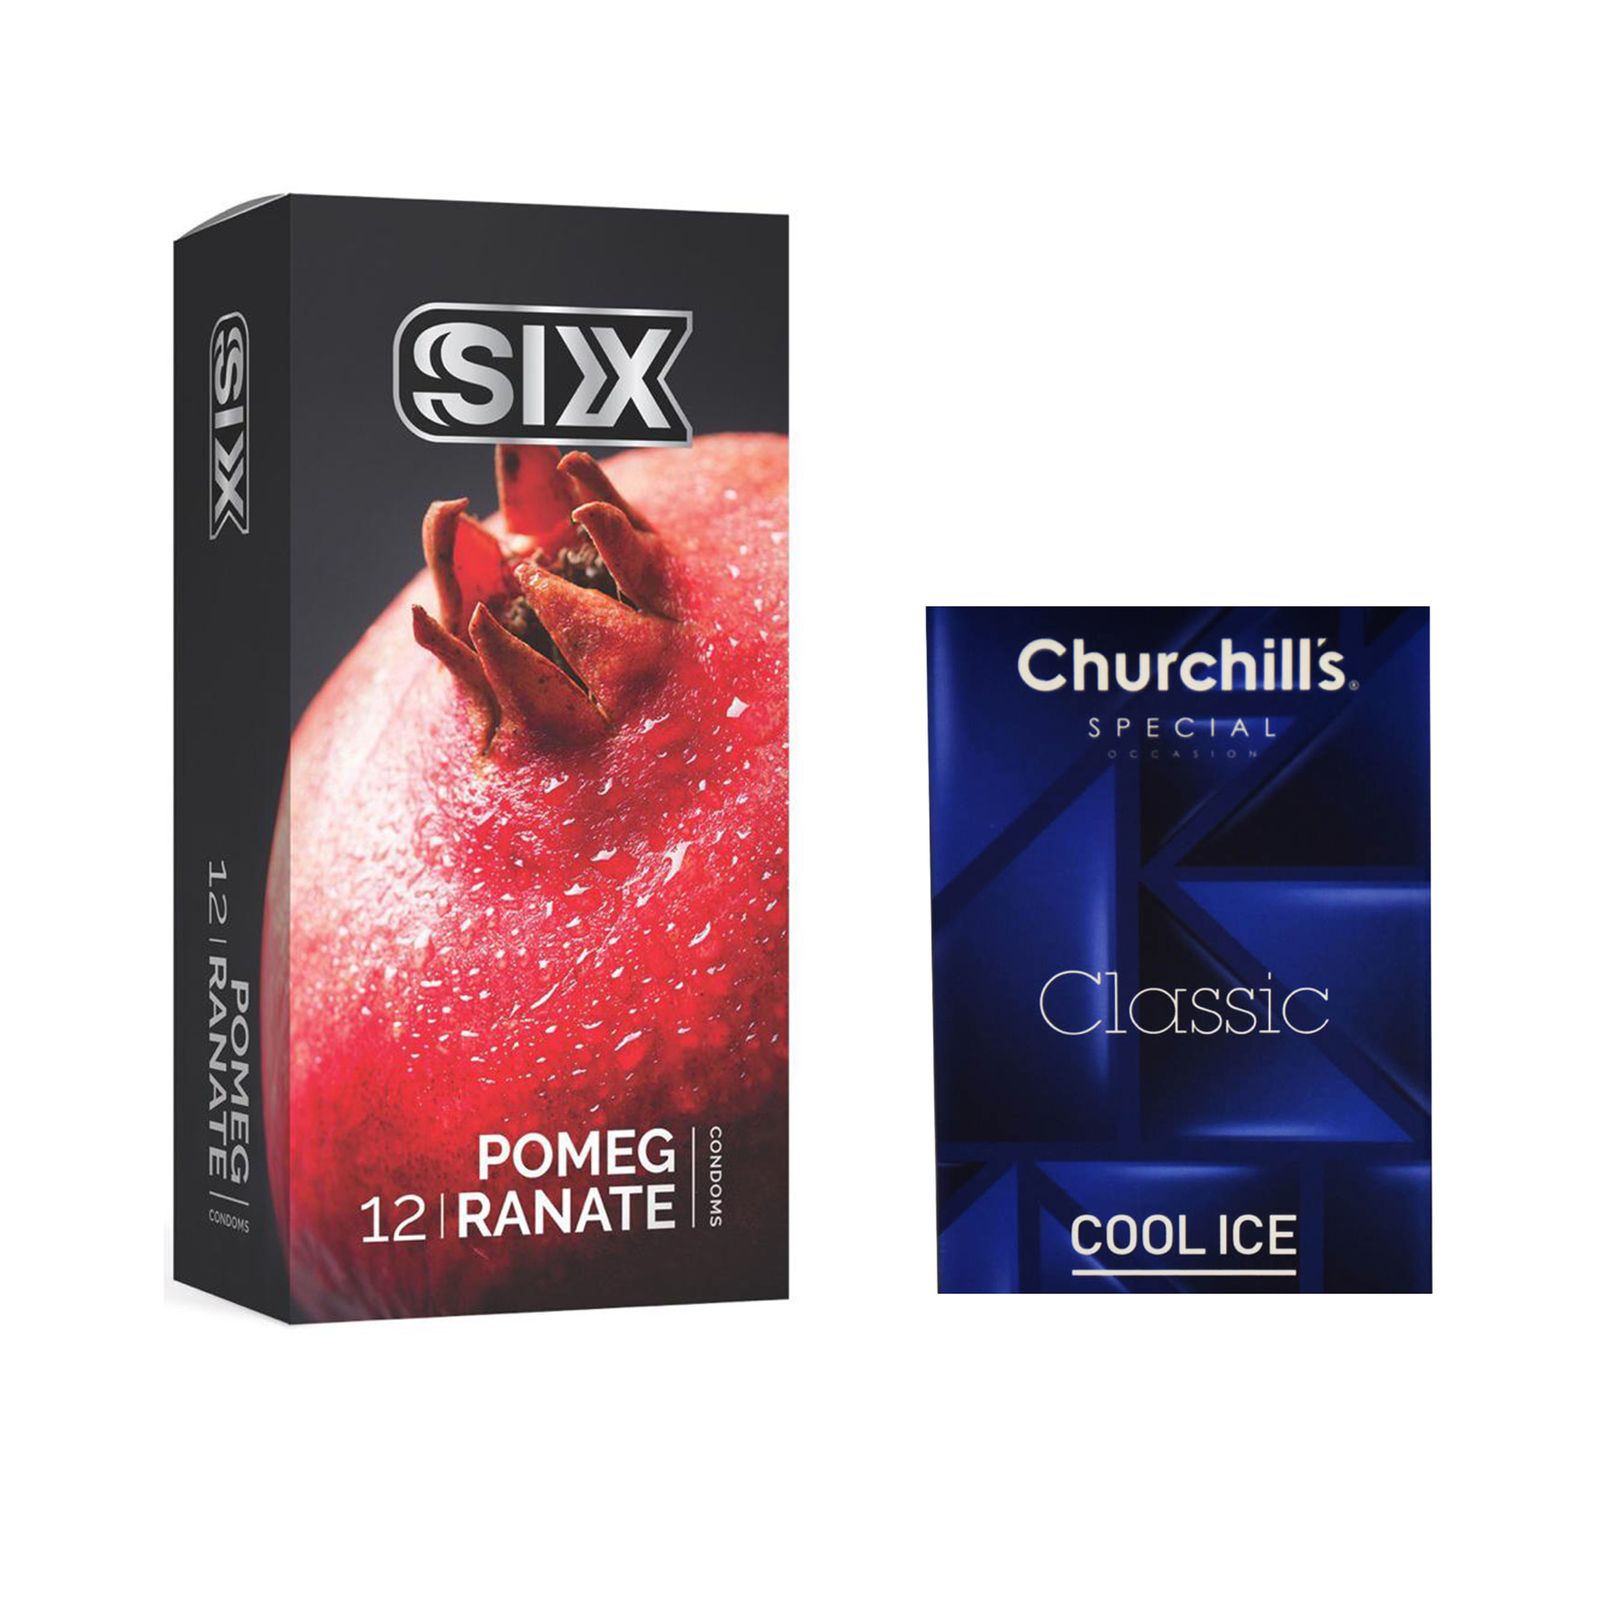 کاندوم سیکس مدل Pomegranate بسته 12 عددی به همراه کاندوم چرچیلز مدل Cool Ice بسته 3 عددی -  - 2